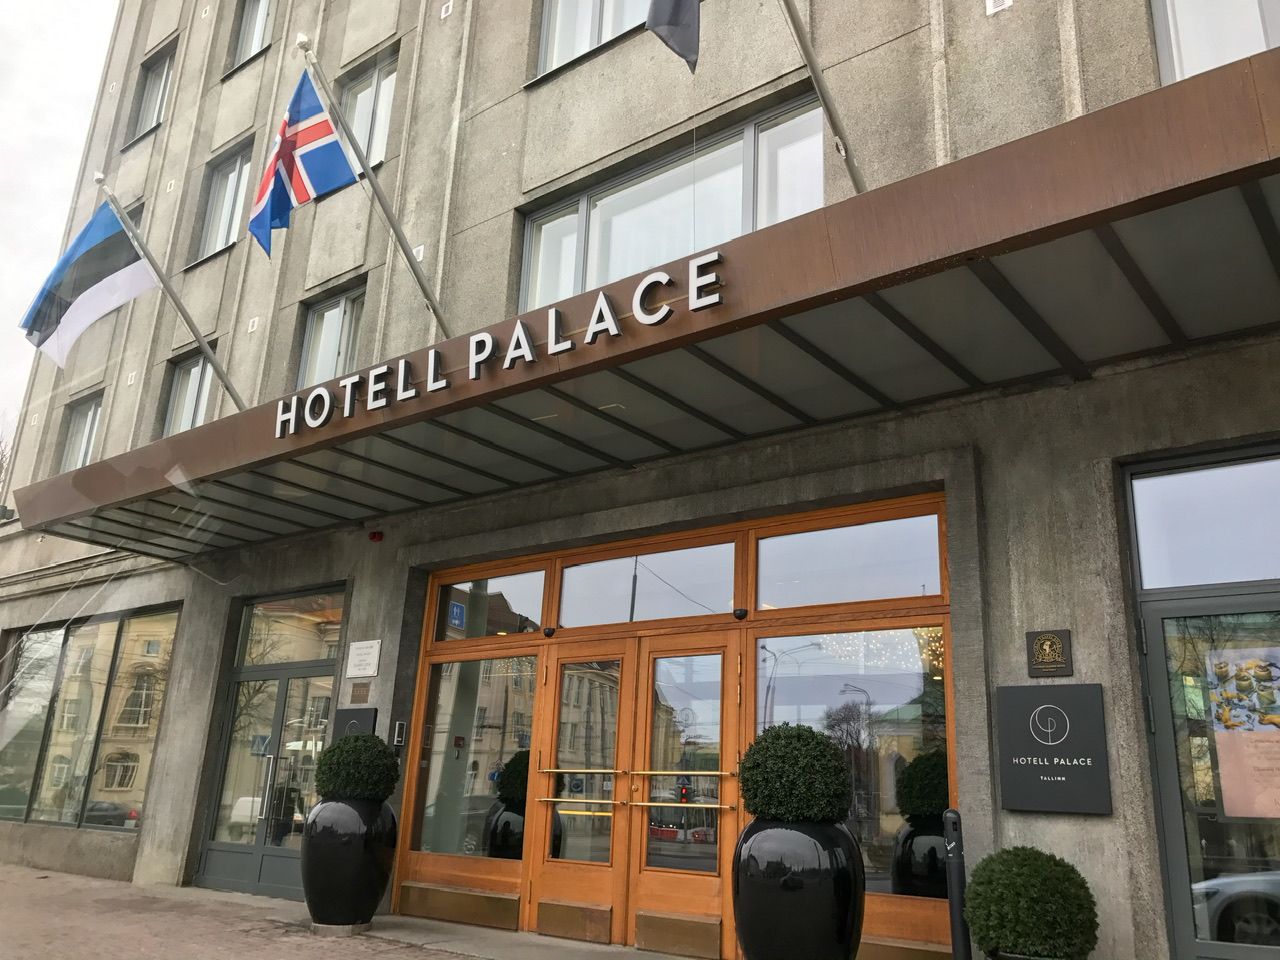 Hotell Palace